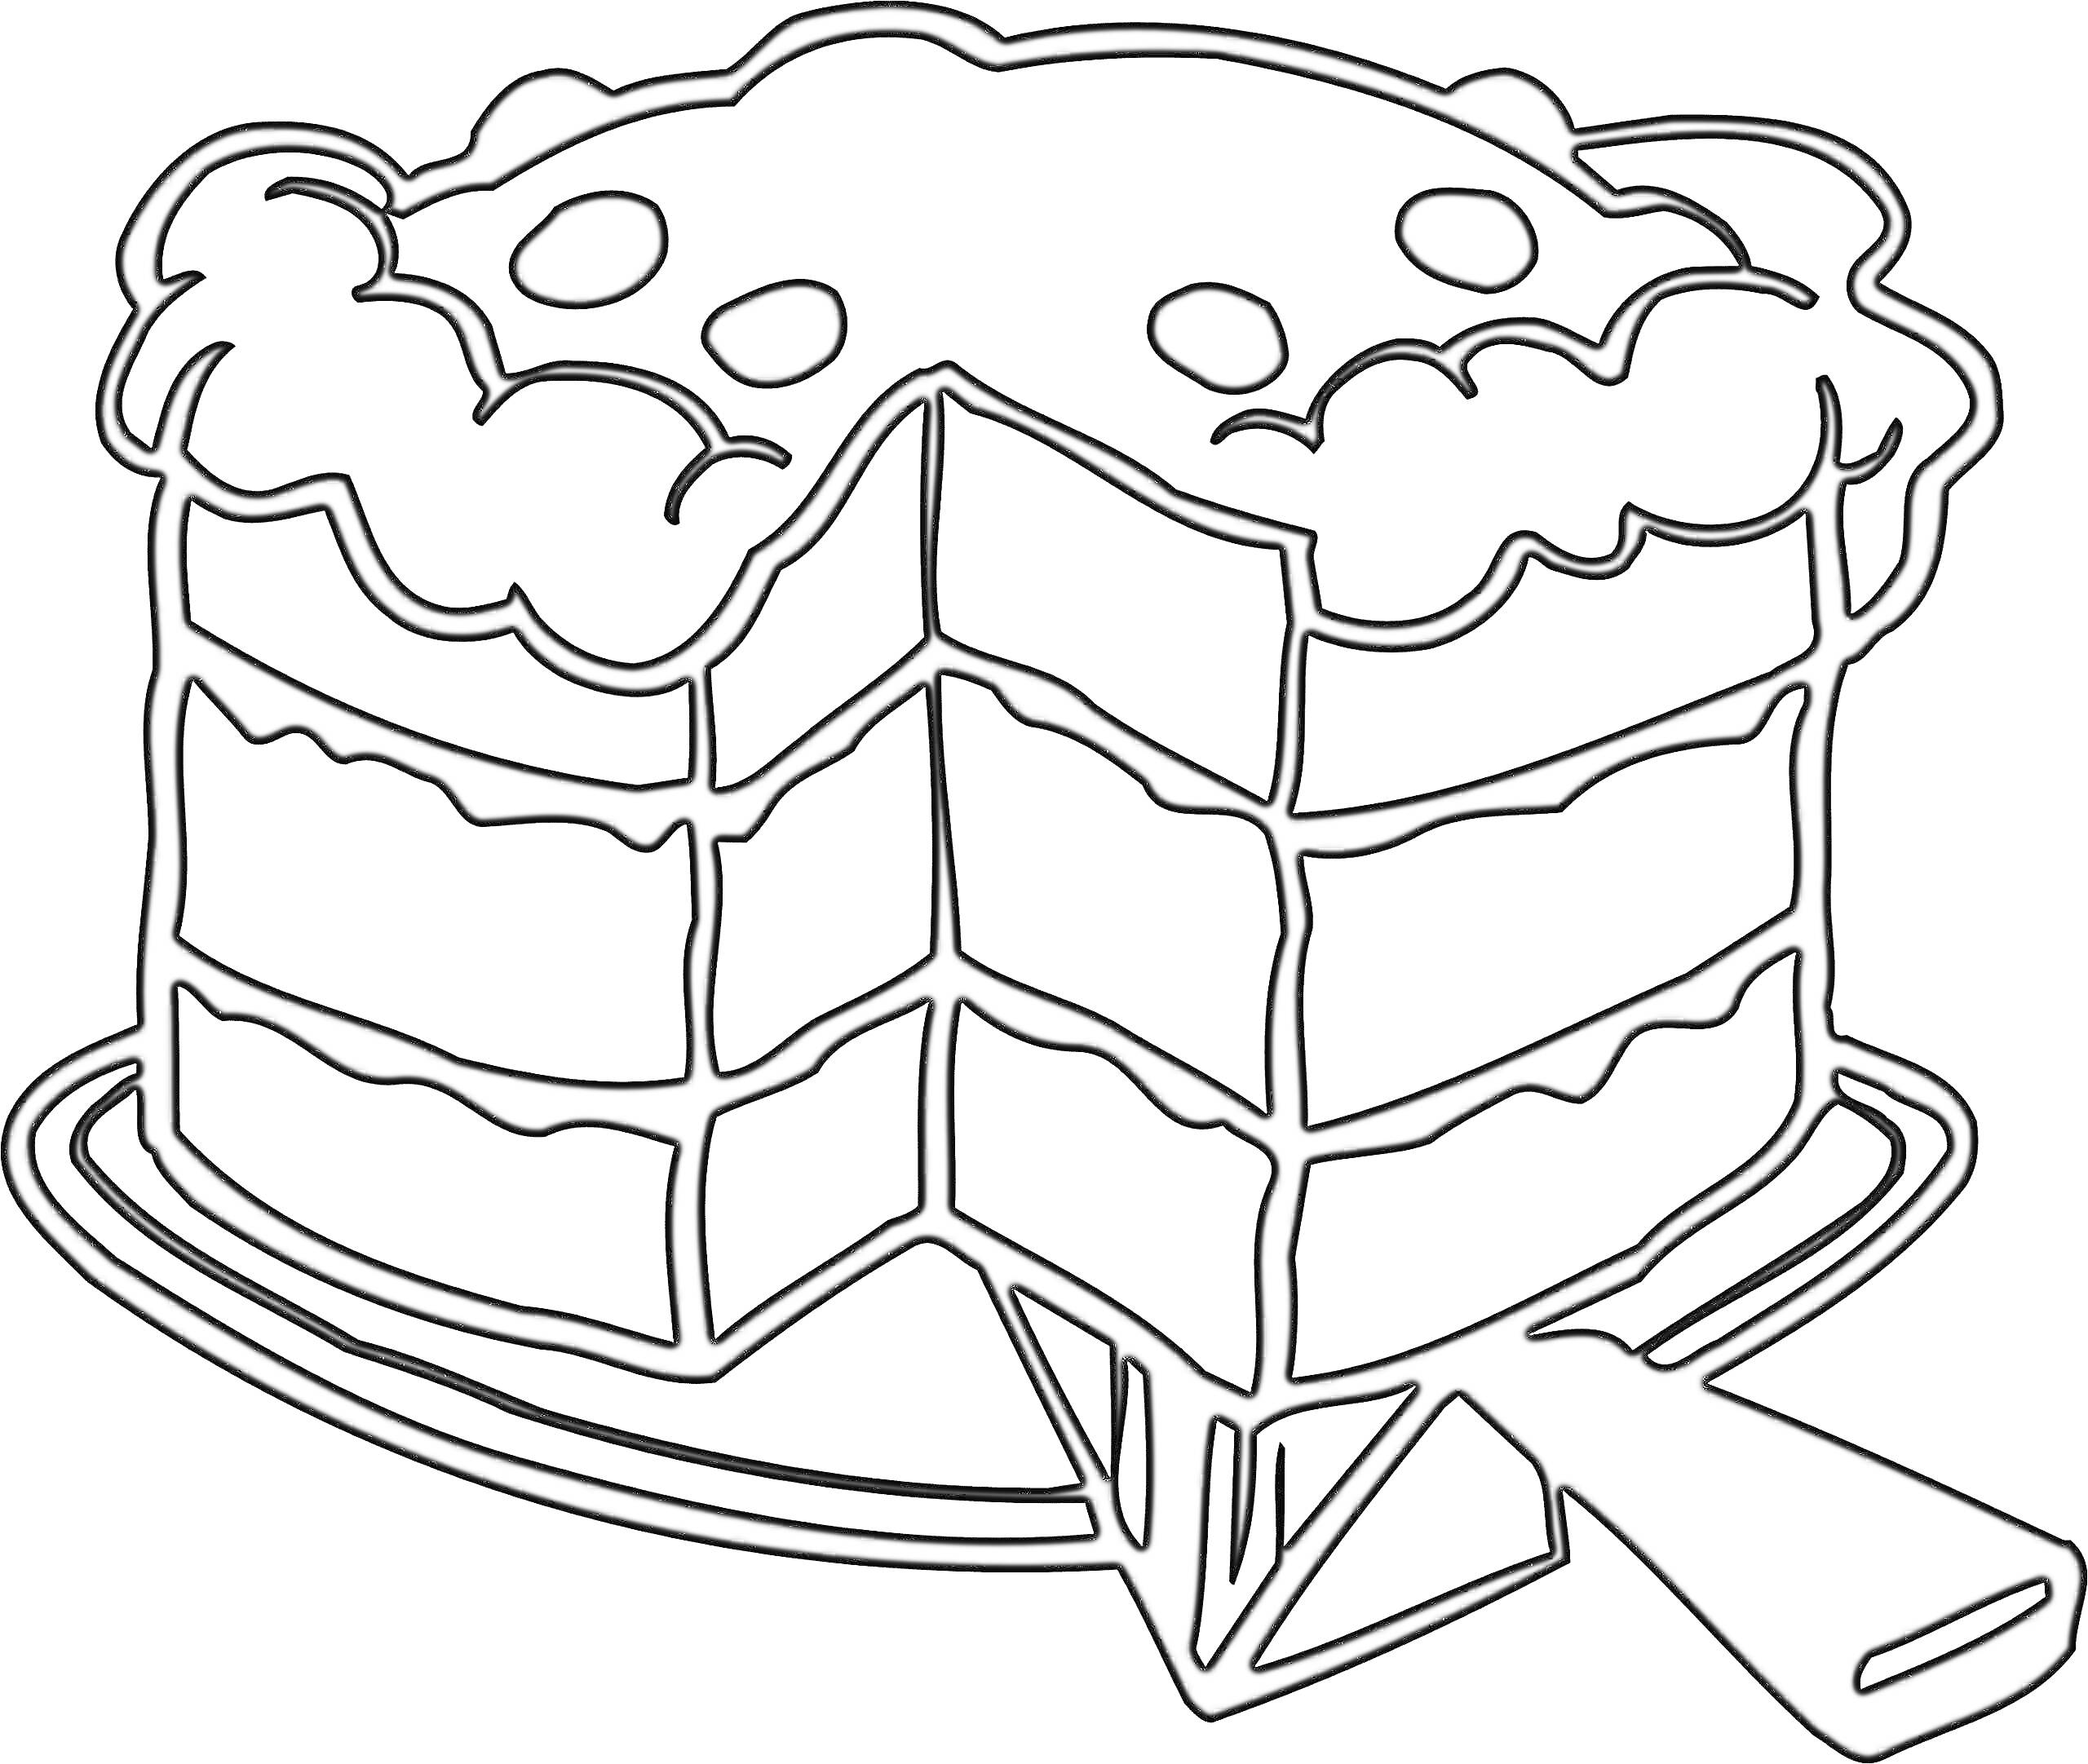 Торт с кремом и ягодами на блюде с ножом